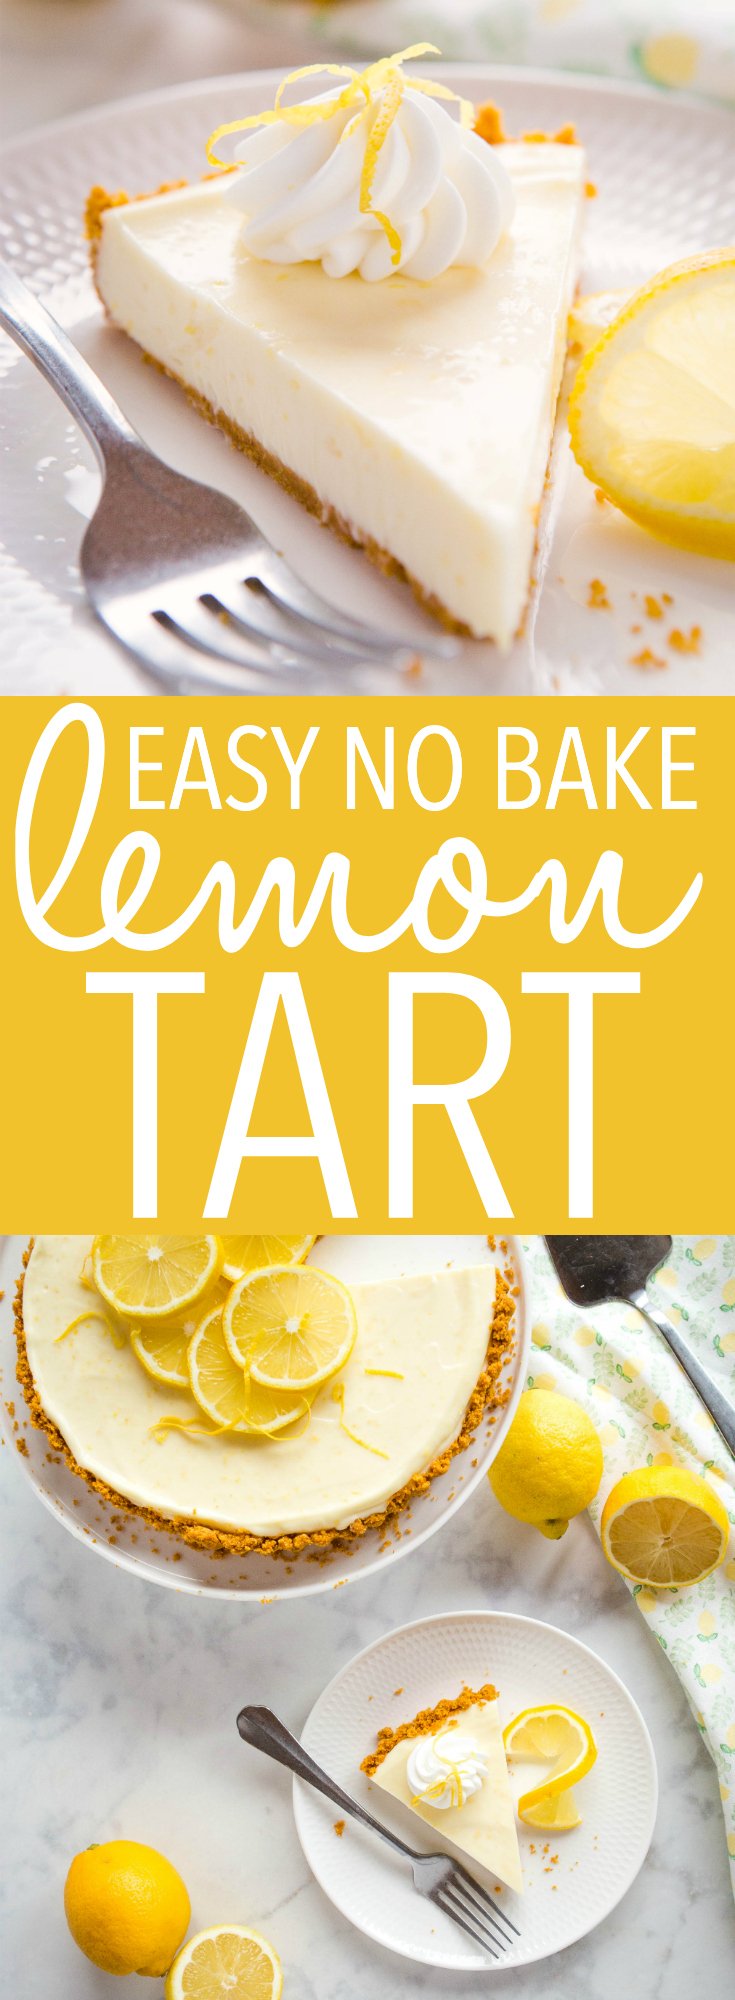 Easy No Bake Lemon Tart Pinterest